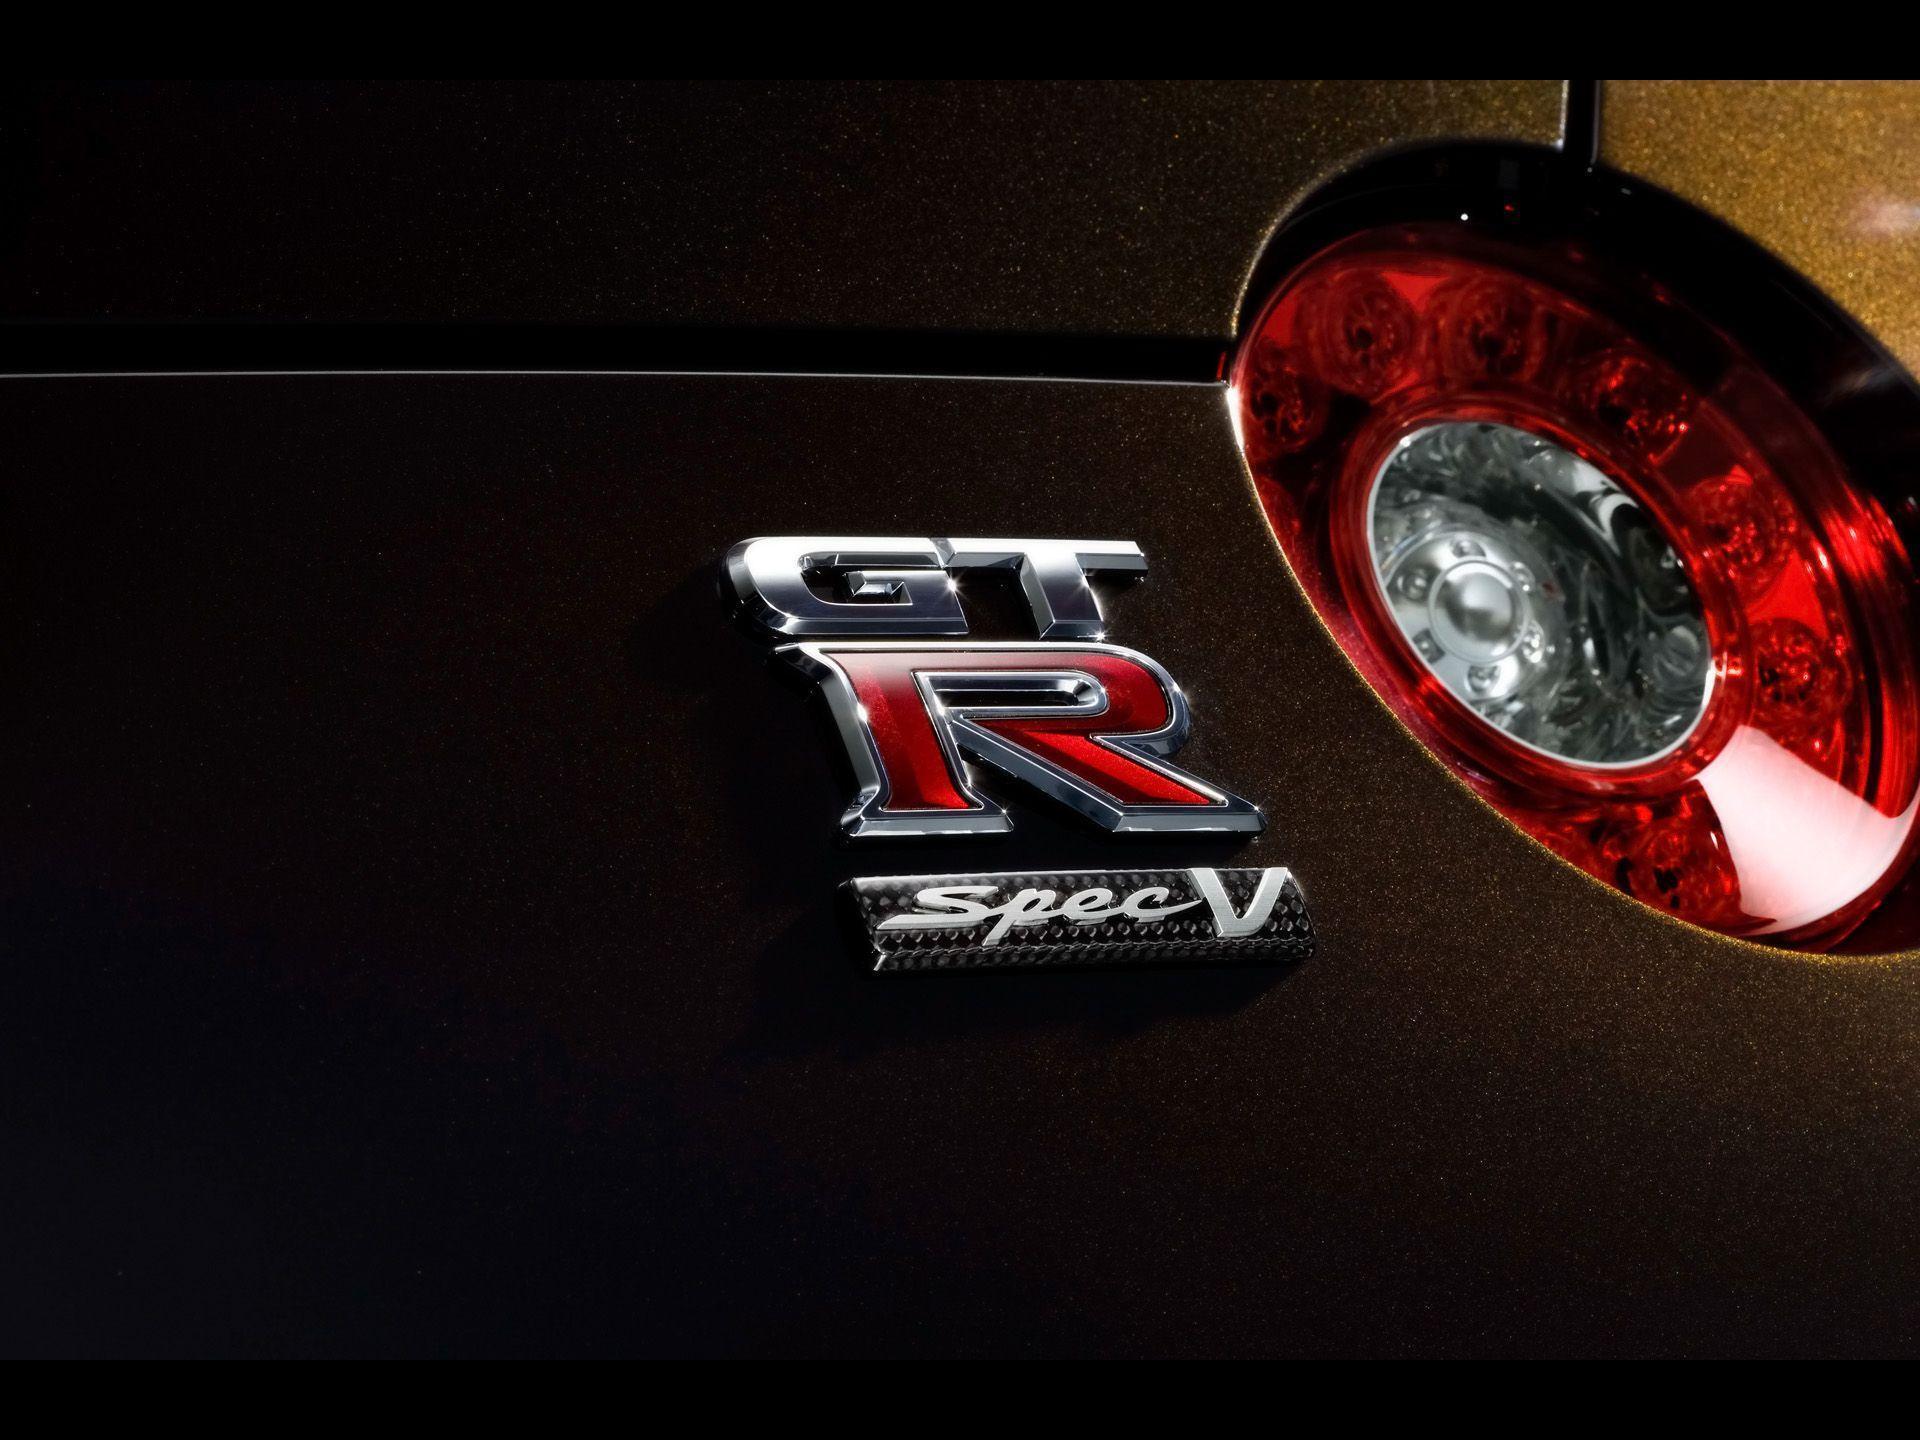 Nissan GT R SpecV